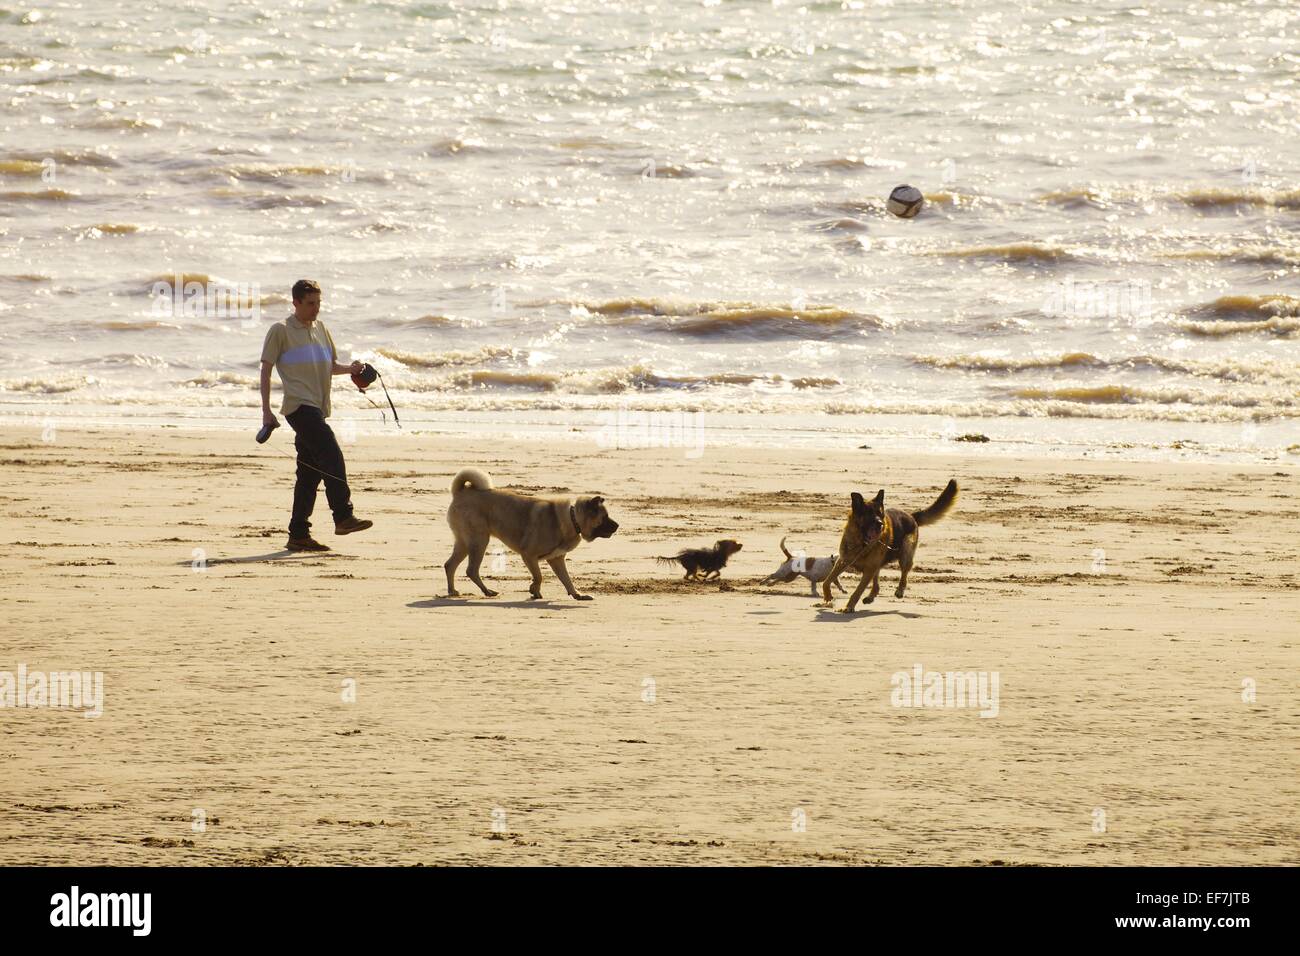 Botter un homme football pour les chiens sur une plage. Allonby Cumbria England UK. Banque D'Images